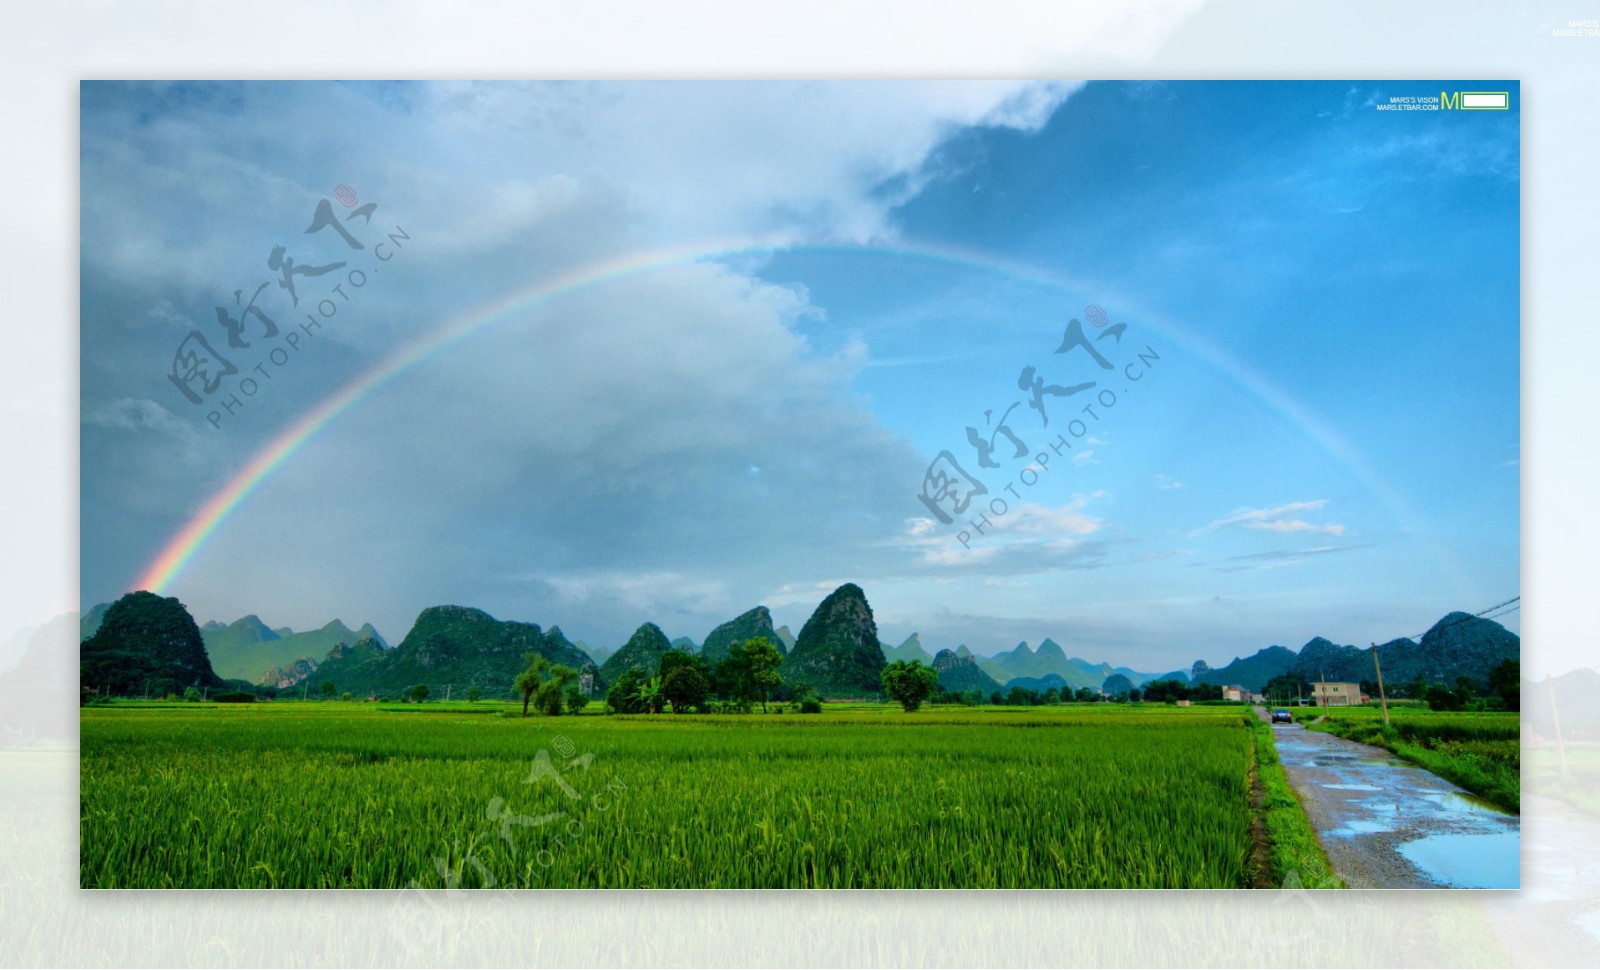 田园彩虹风景图片